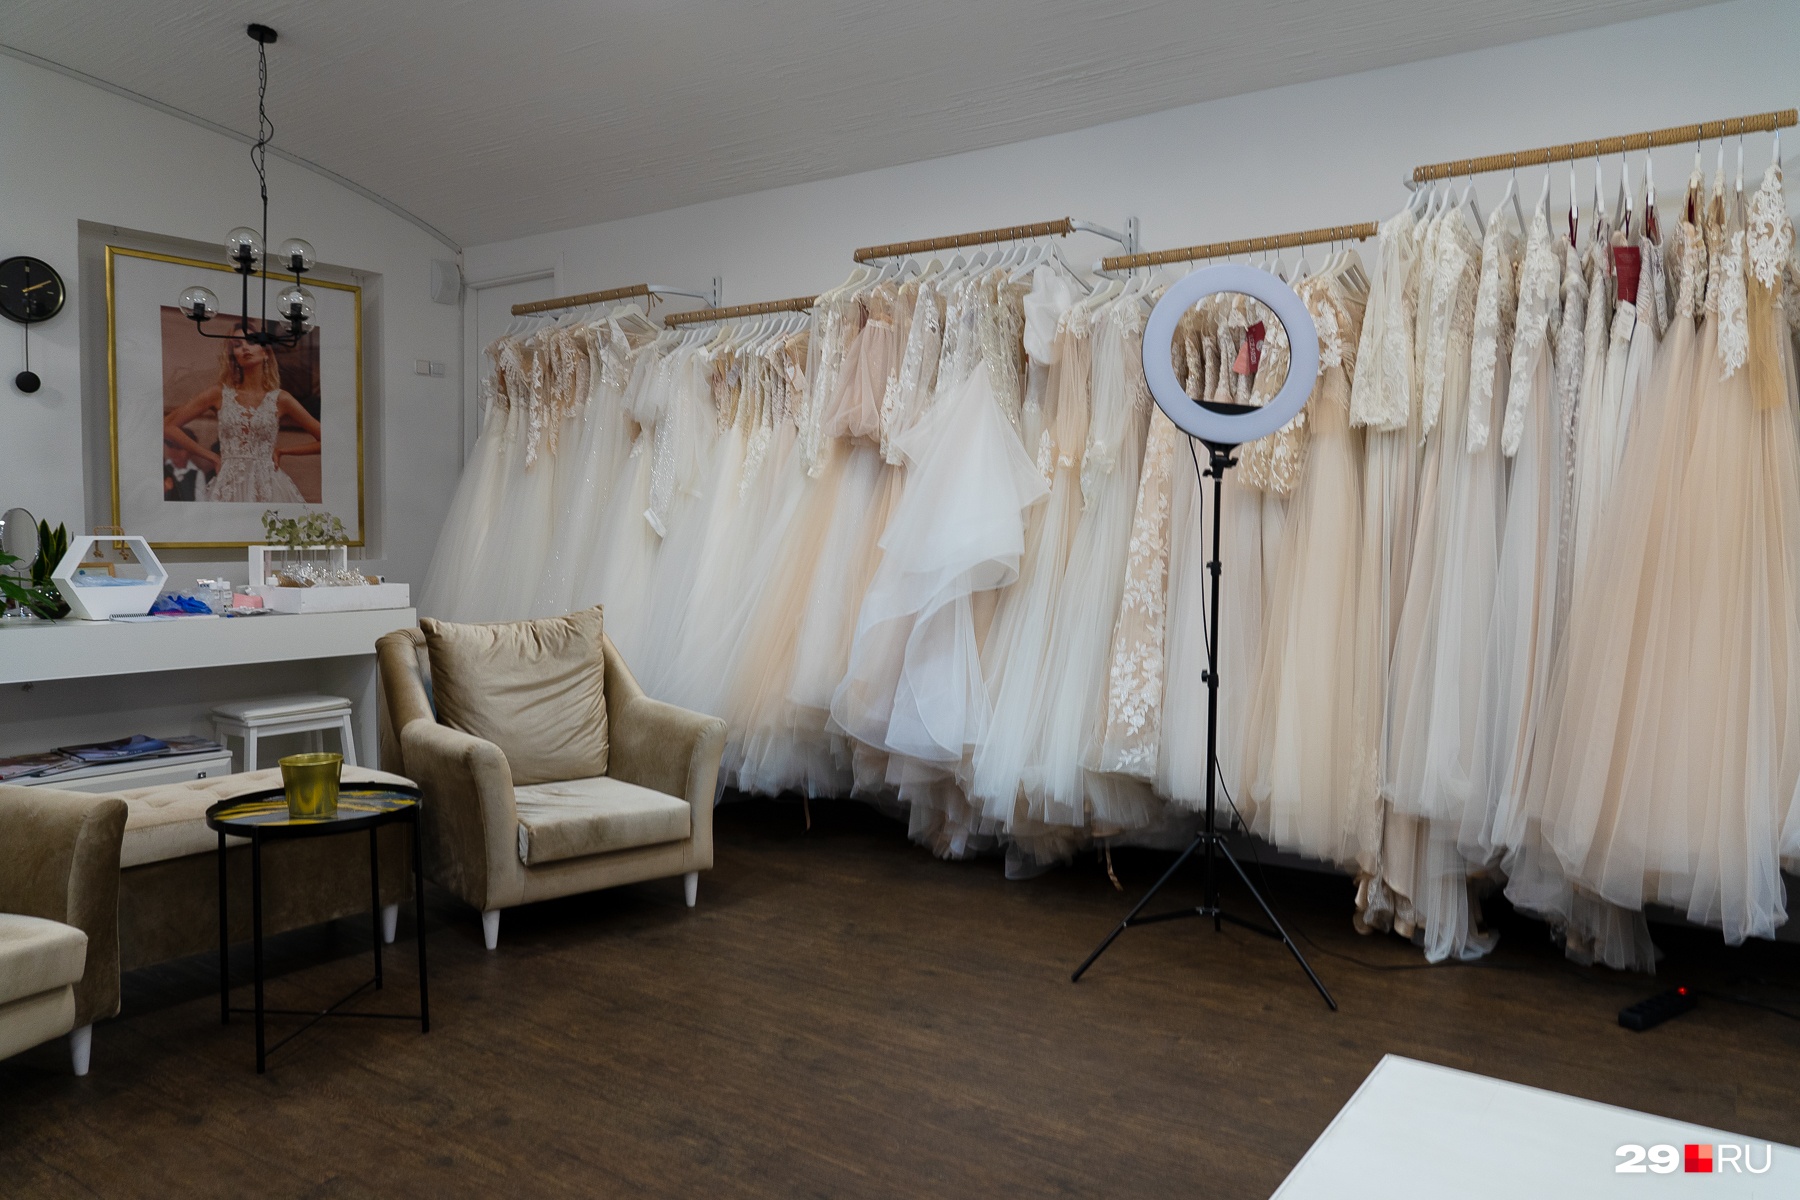 Свадебные платья еще не нашли своих невест — в пандемию заказов стало гораздо меньше